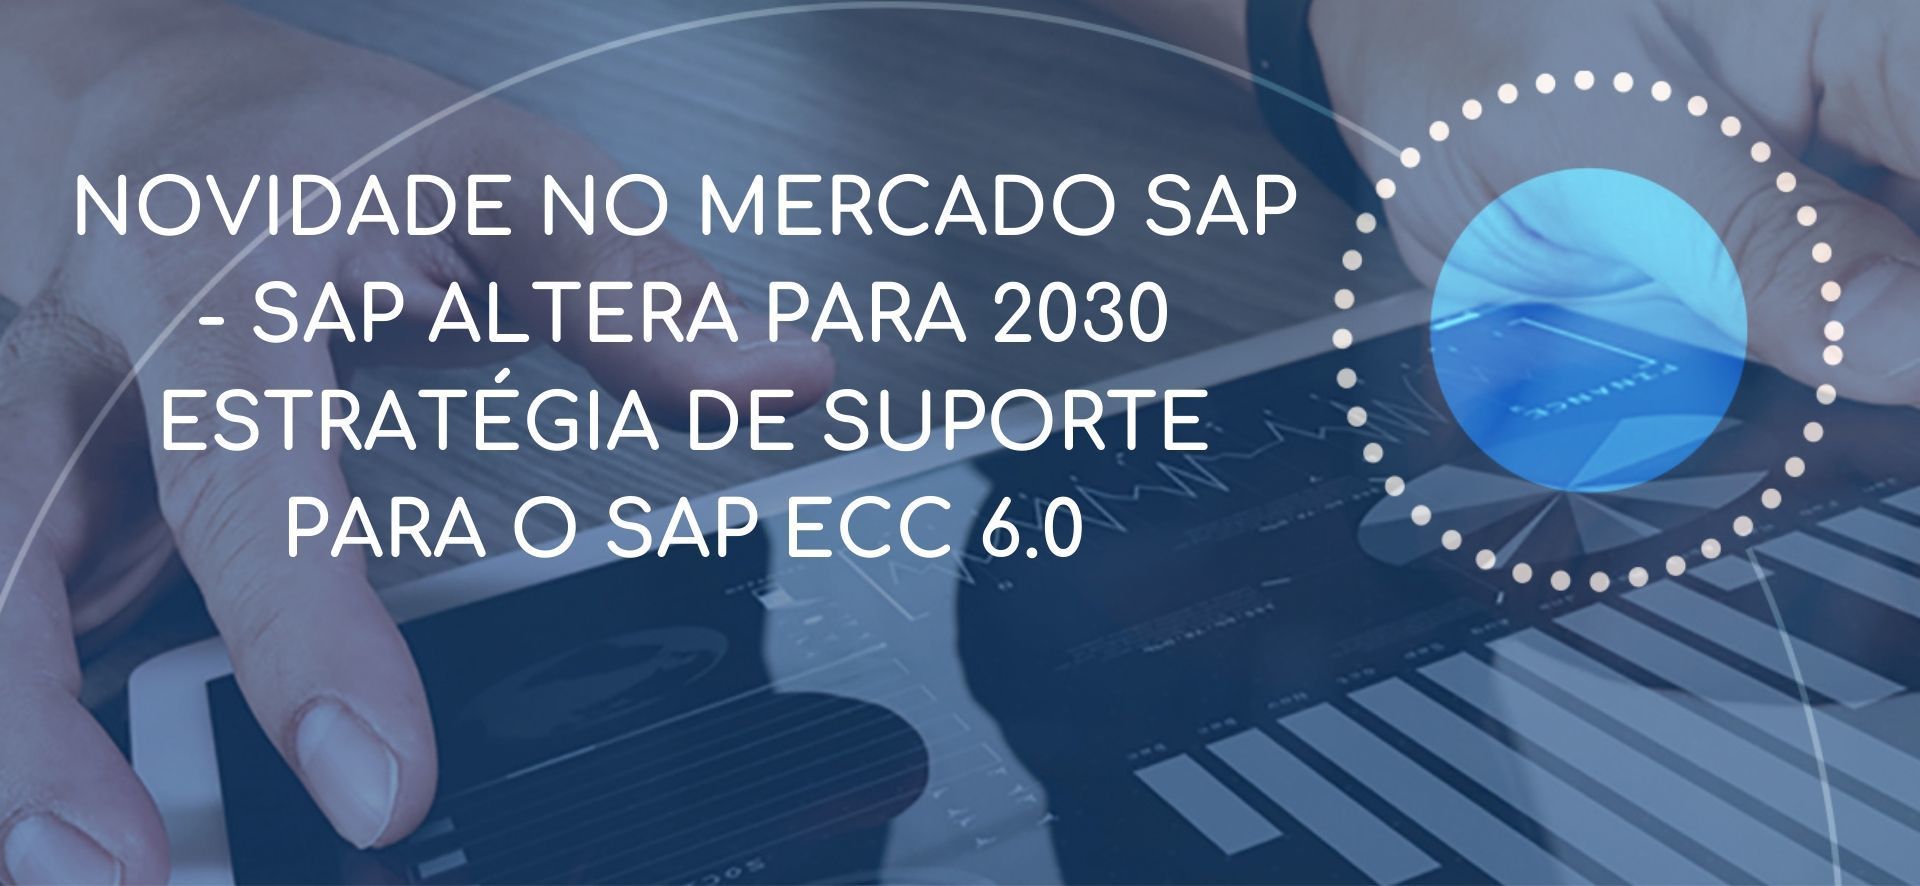 SAP altera para 2030 estratégia de suporte para o SAP ECC 6.0